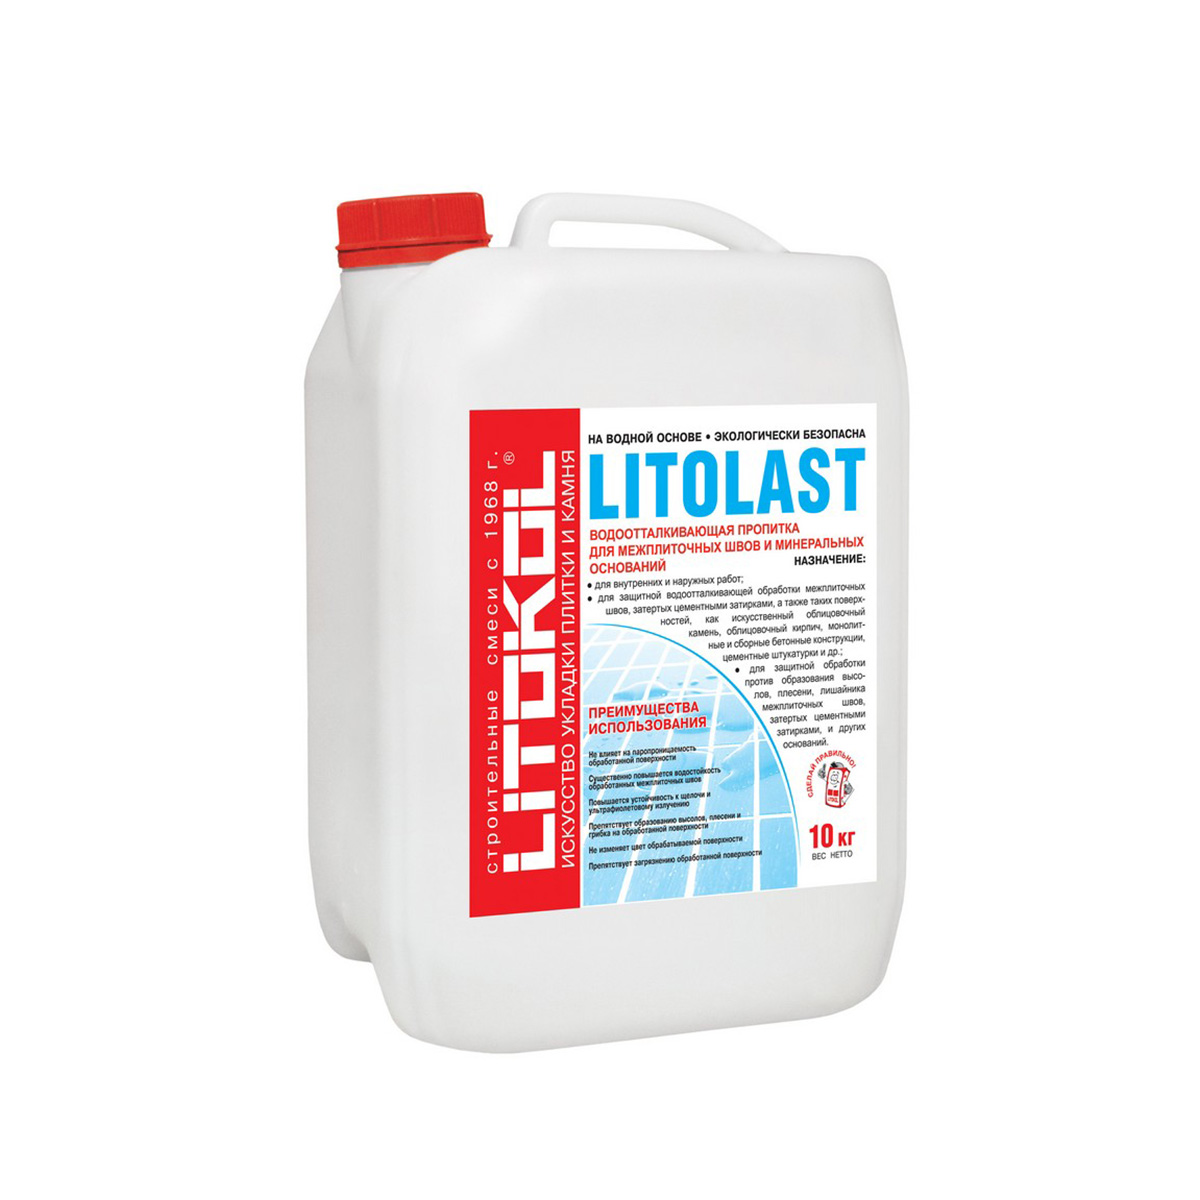 Пропитка водоотталкивающая для межплиточных швов "litolast" 10 кг (1) litokol